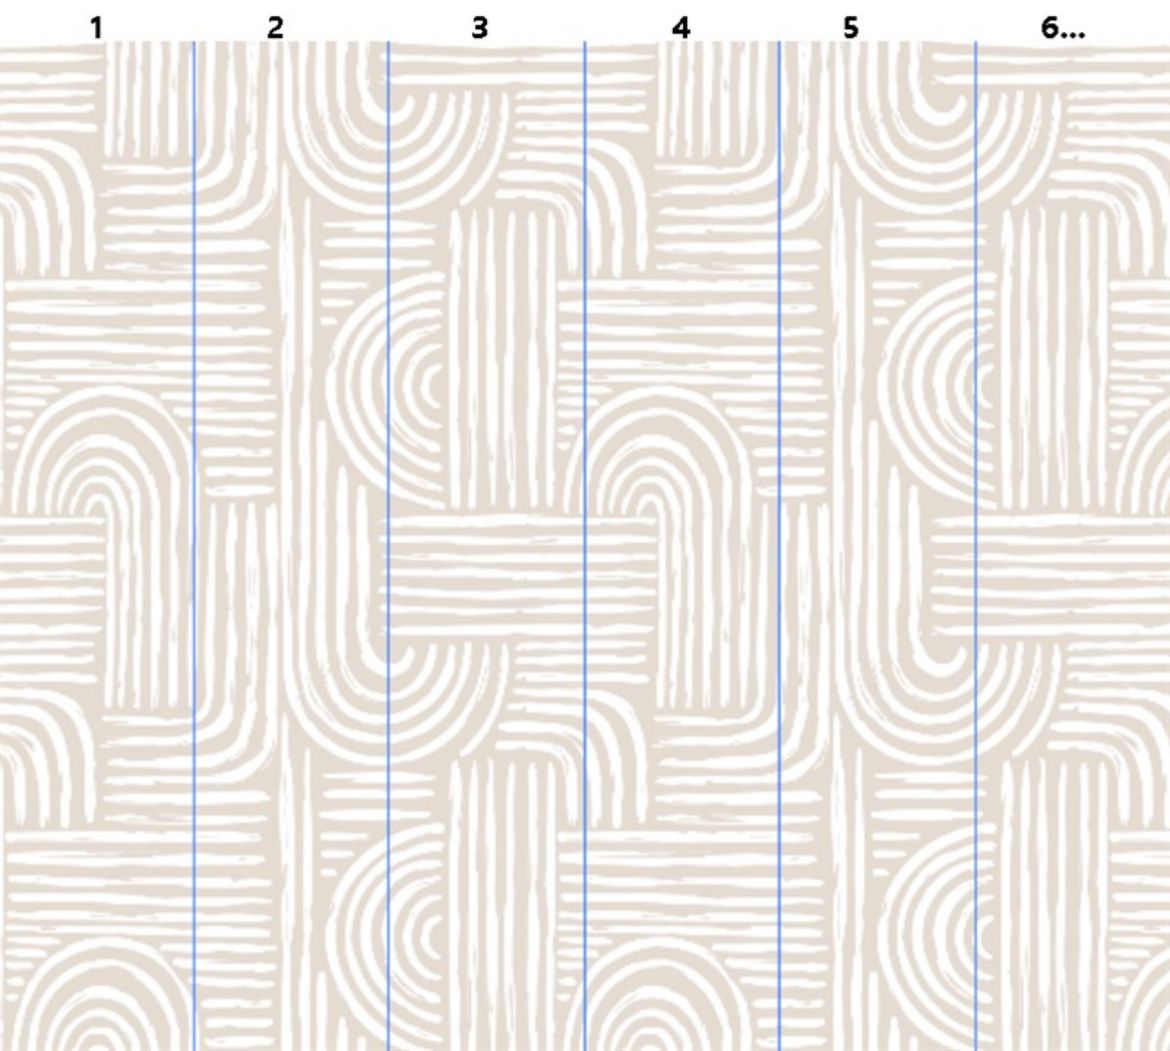 Tasarım Çizgi Detaylı Duvar Kağıdı TSD-81 resmi